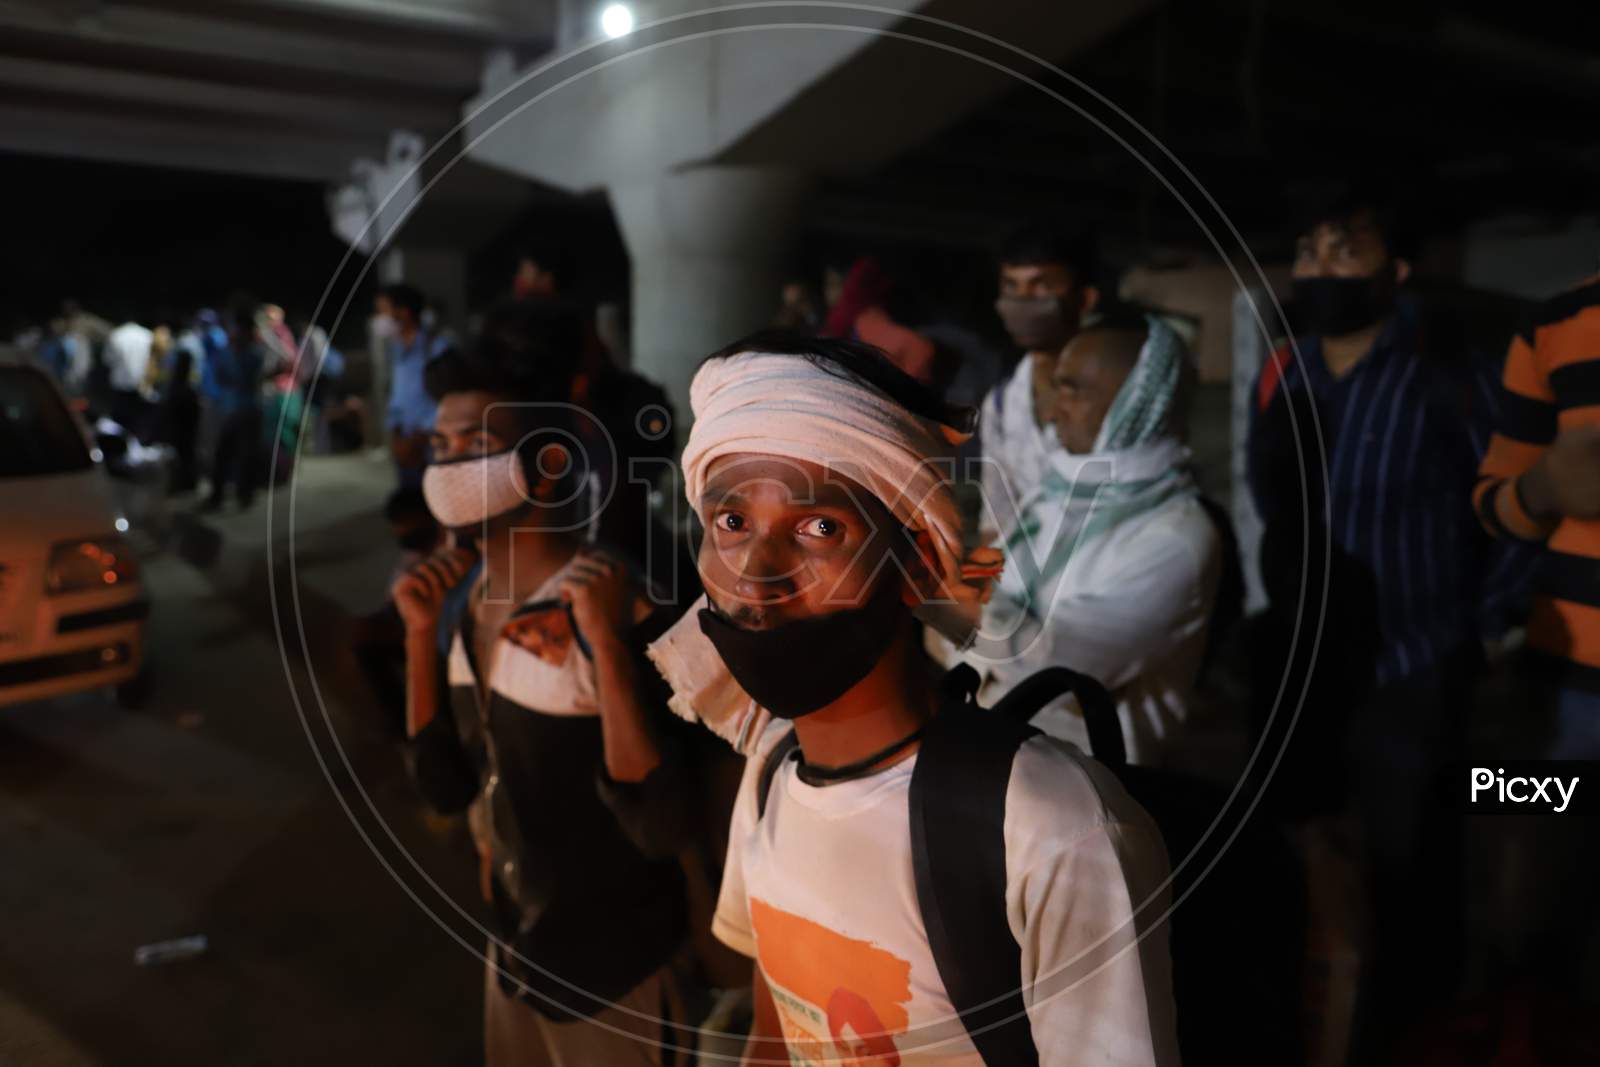 India Coronavirus, Migrant Crisis